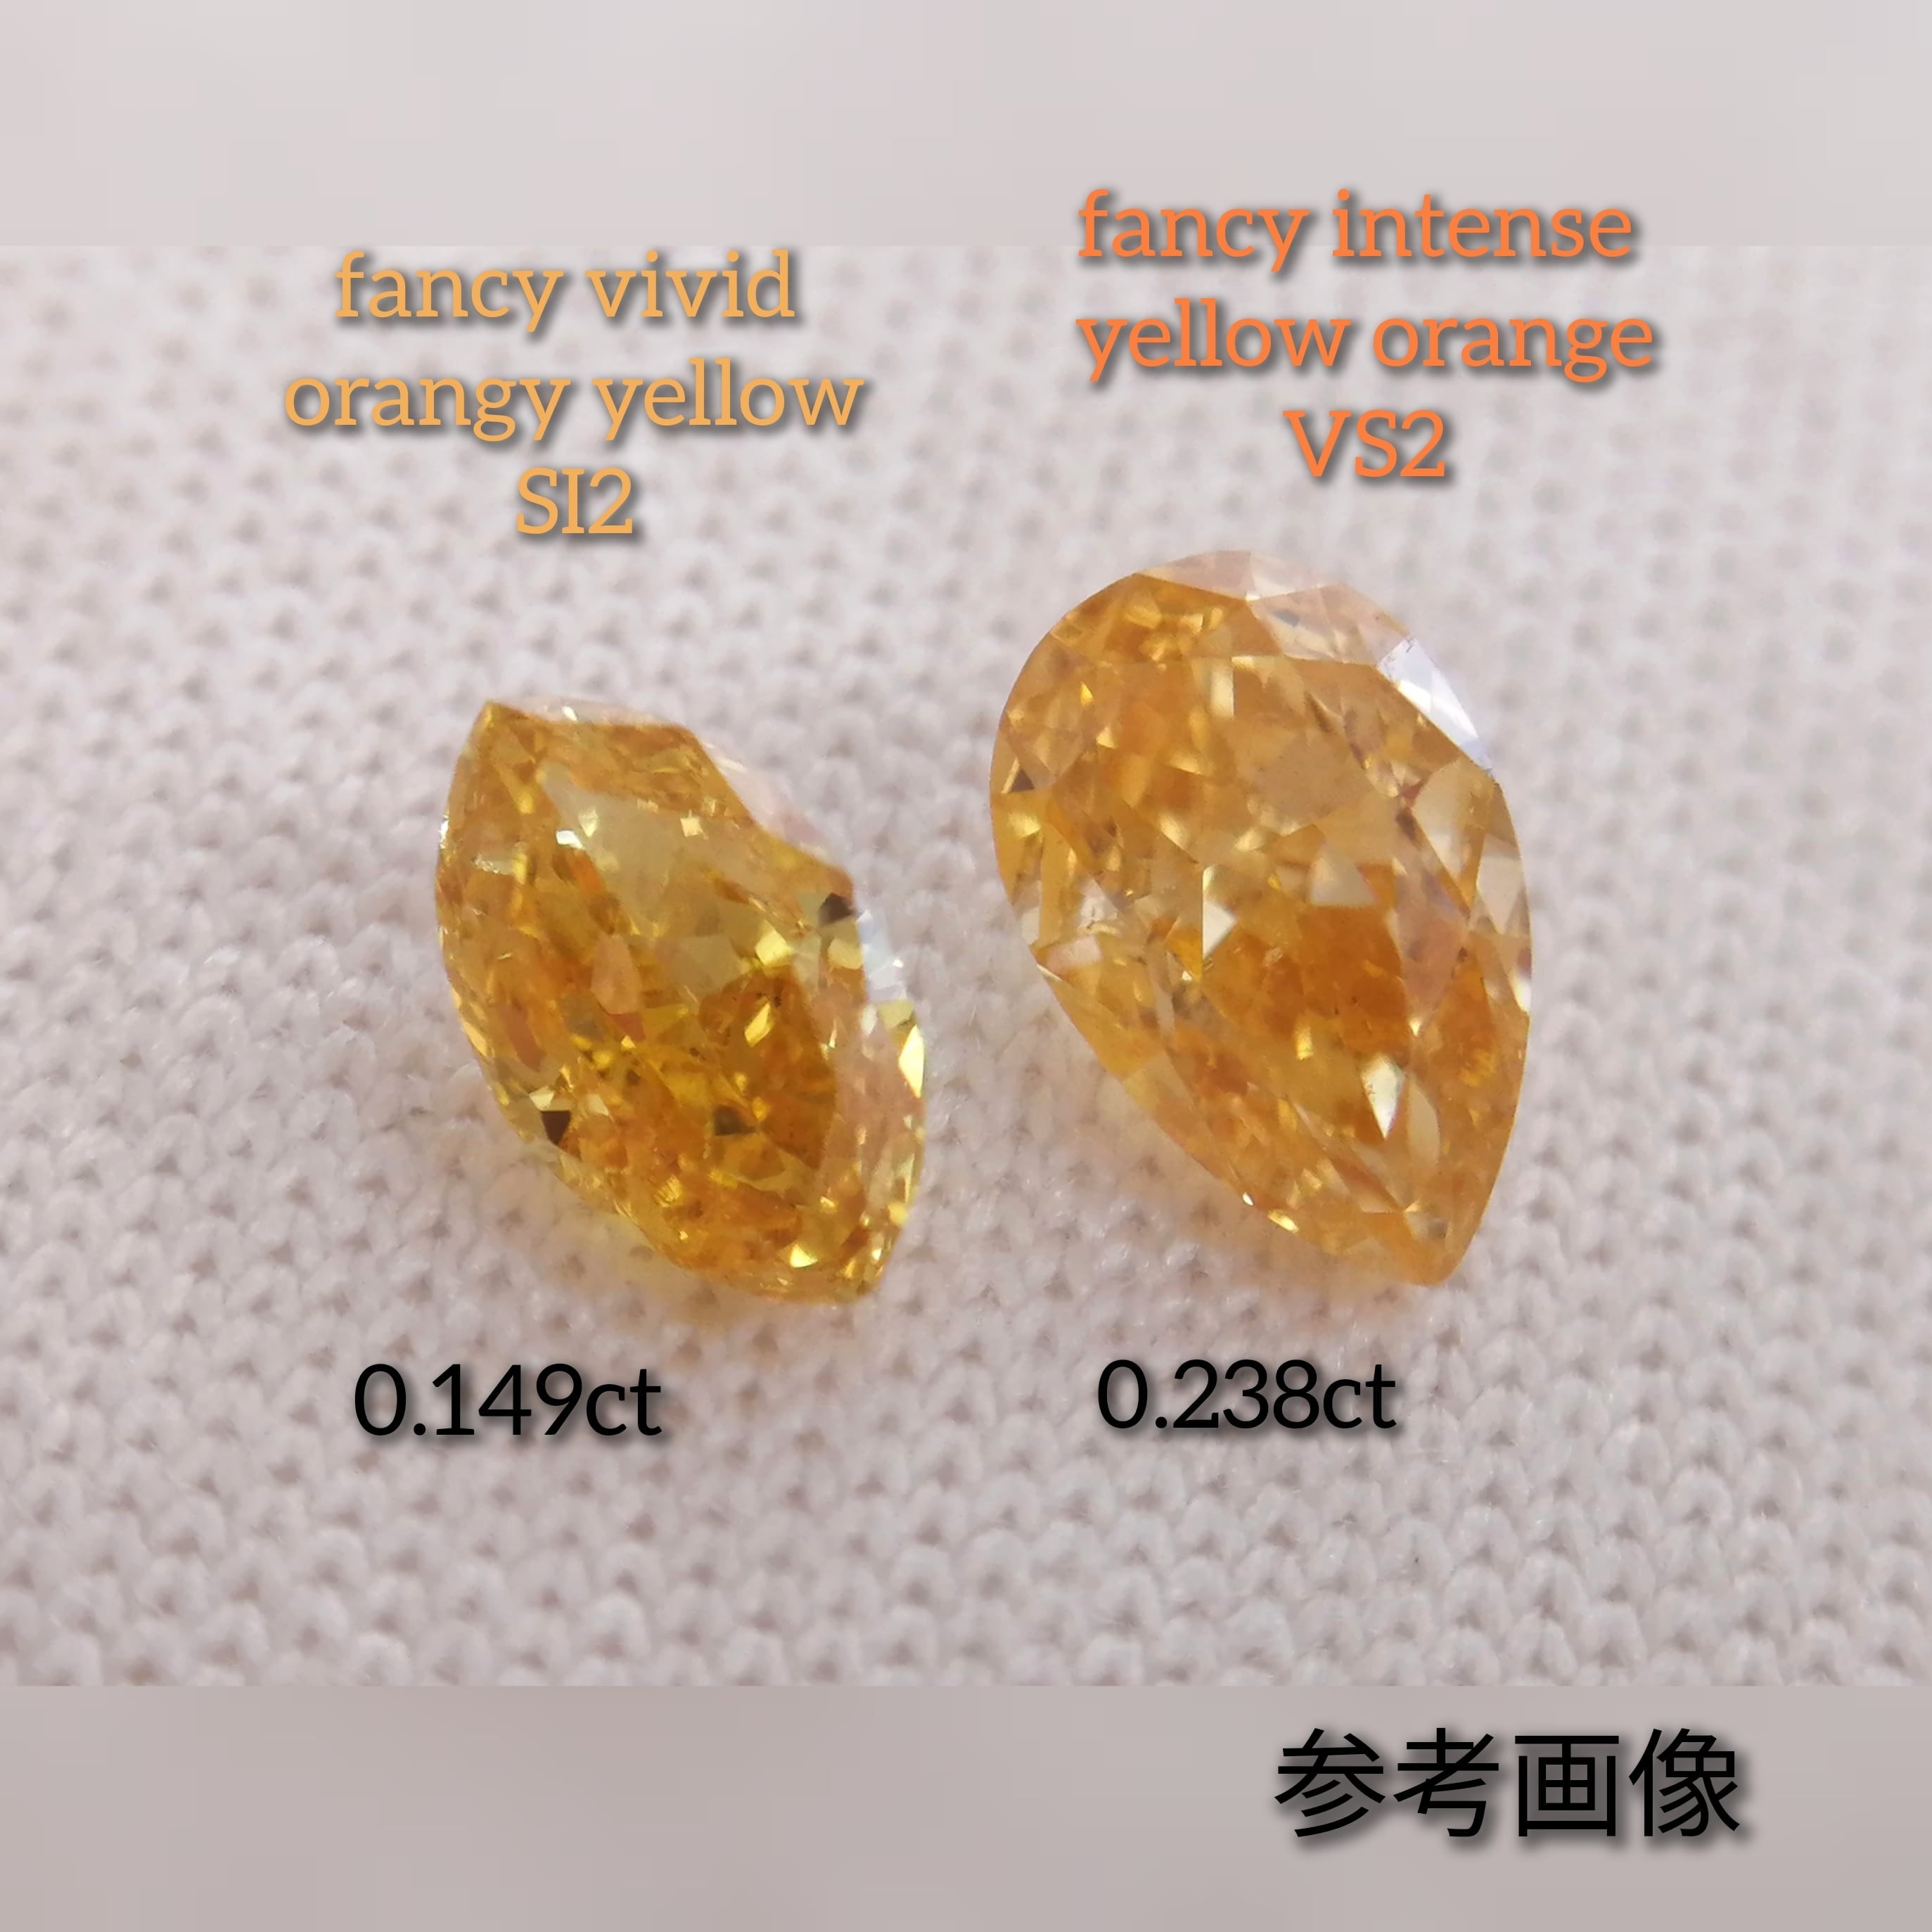 オレンジィイエローダイヤモンドルース 0.149ct fancy vivid orangy yellow SI2(CGL)